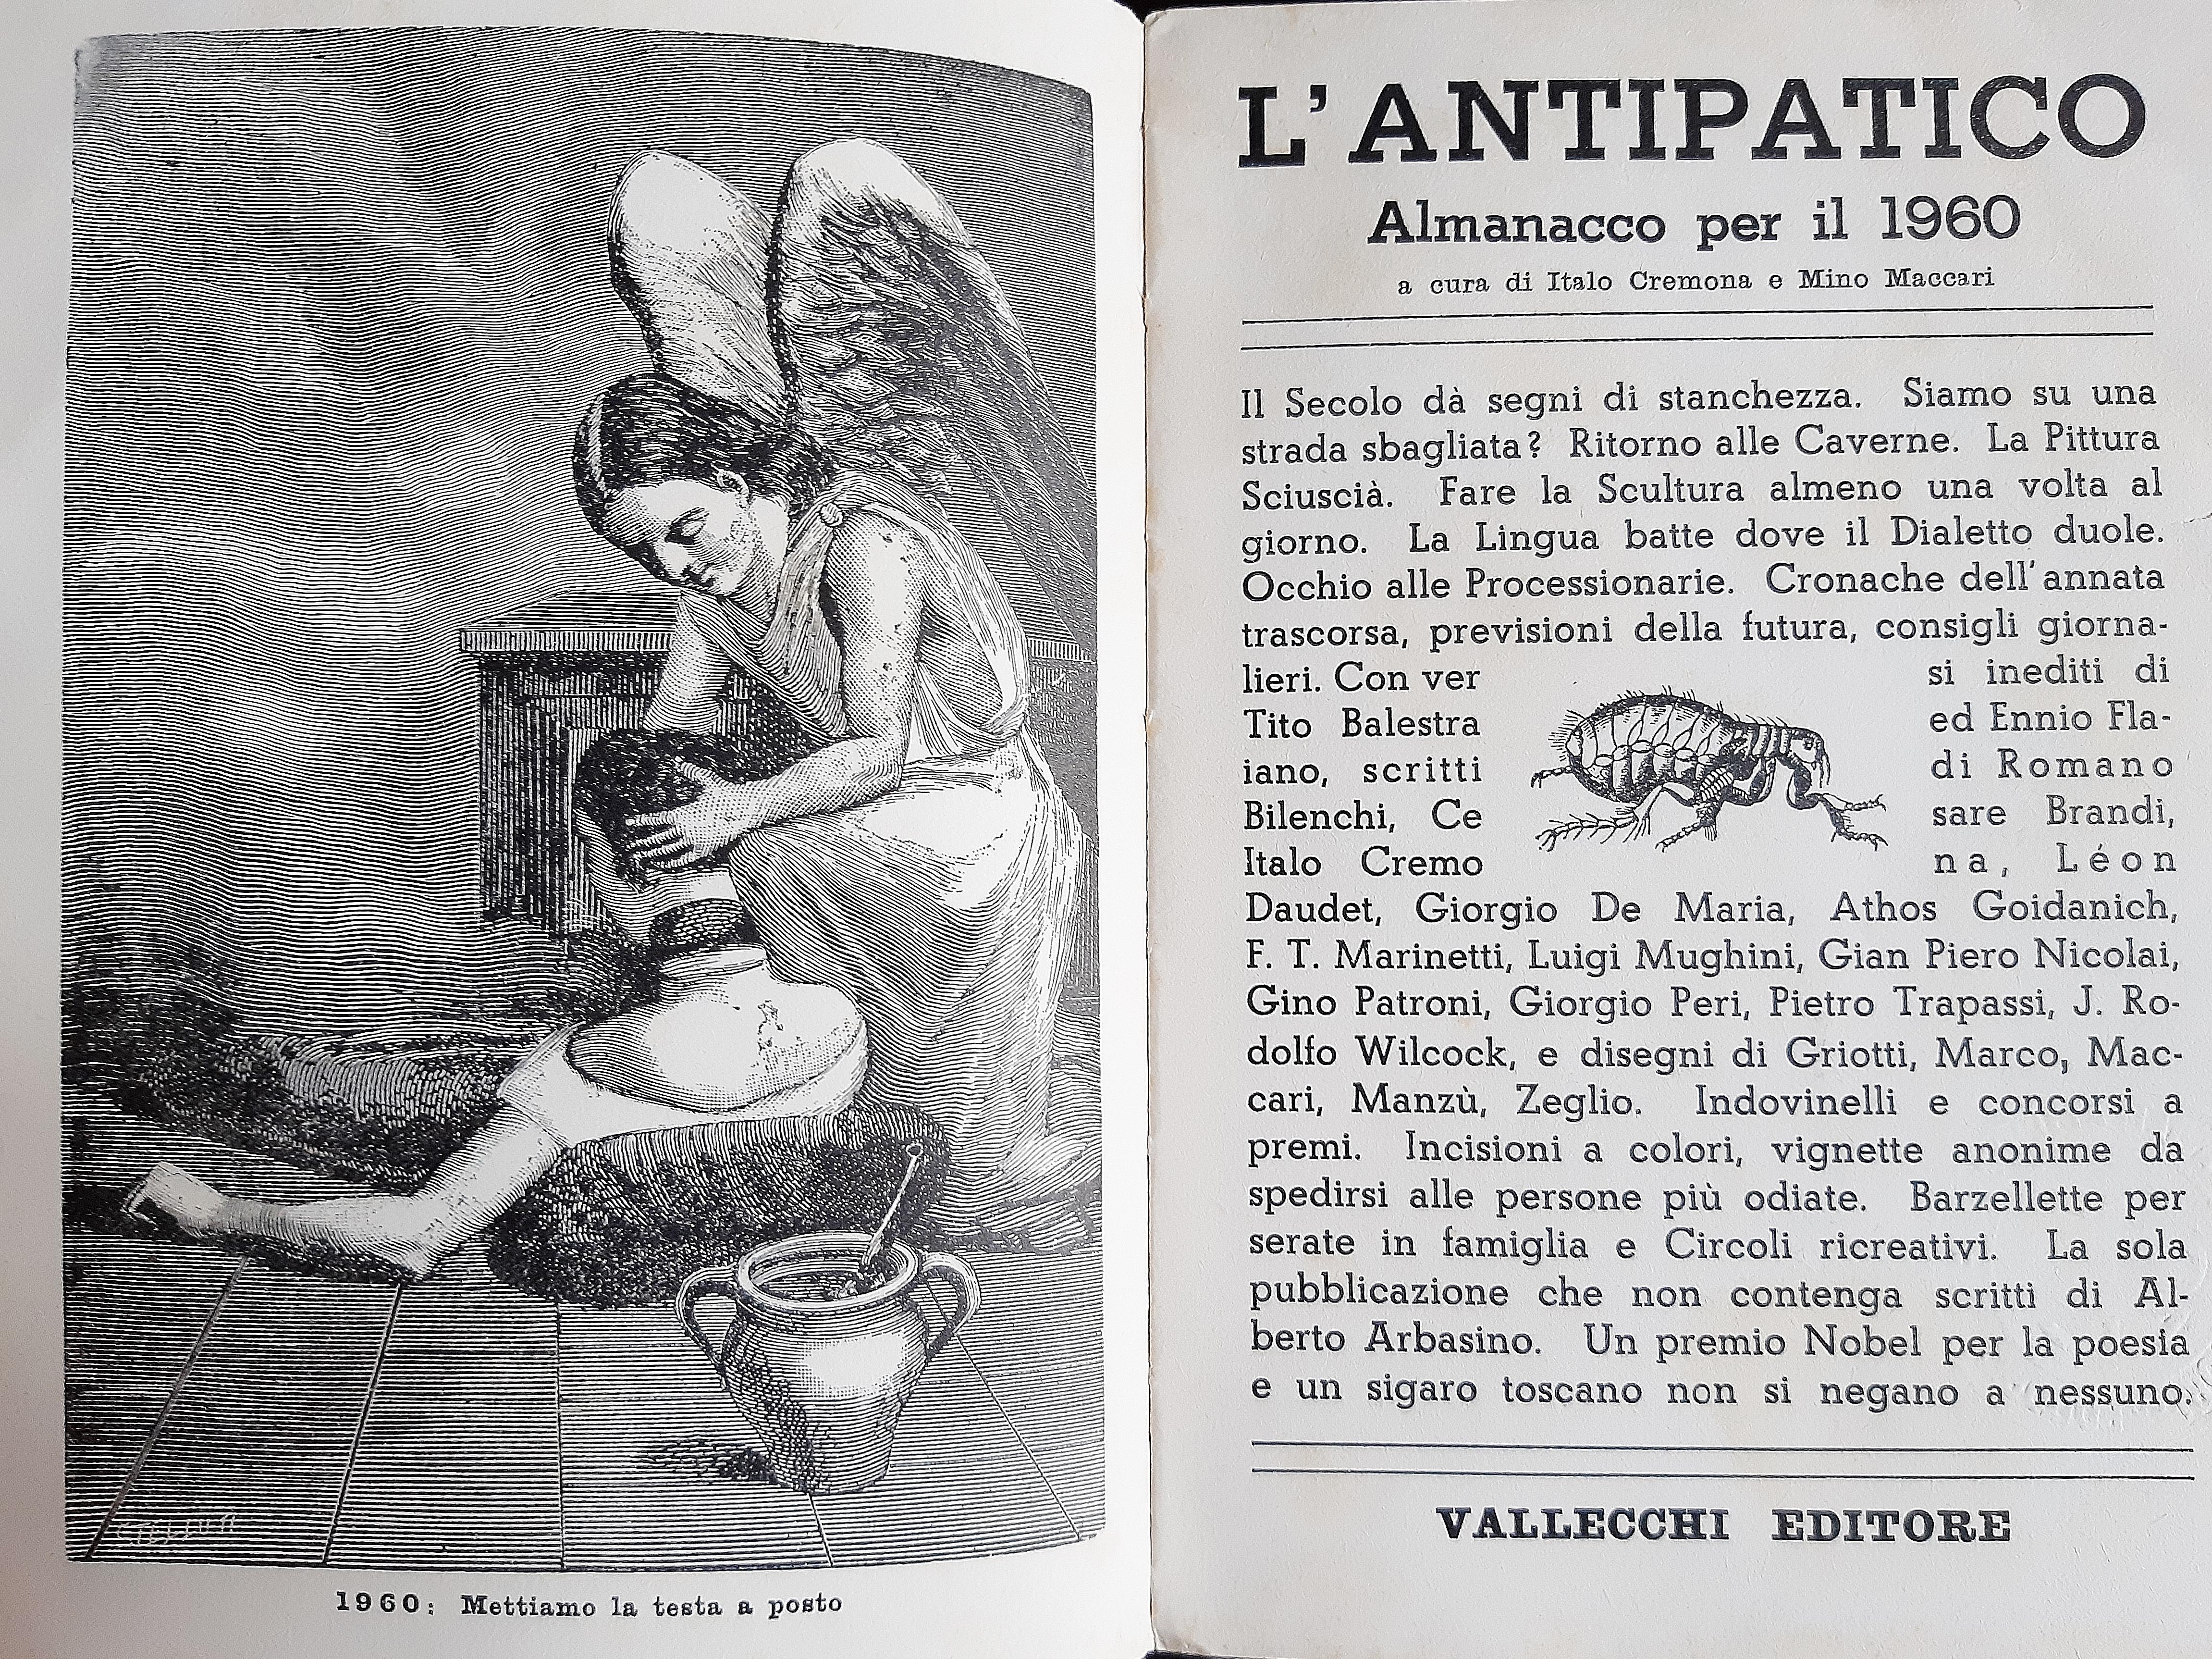 L’Antipatico - Almanacco - Rare Book Illustrated by Mino Maccari - 1959 For Sale 1